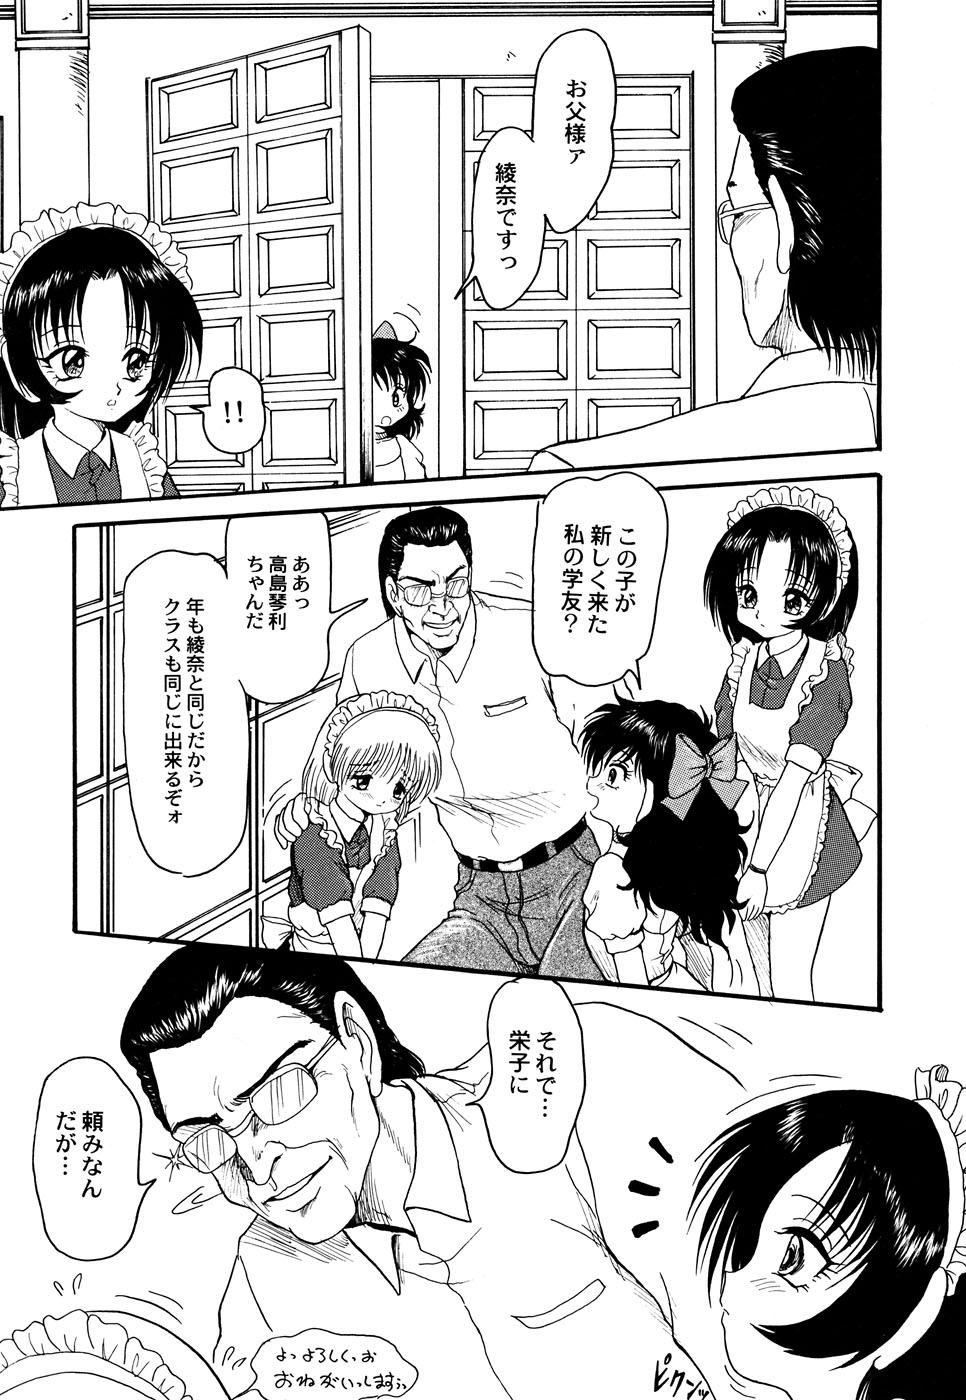 Long Maid Shoujo Club Vol.3 Grosso - Page 7